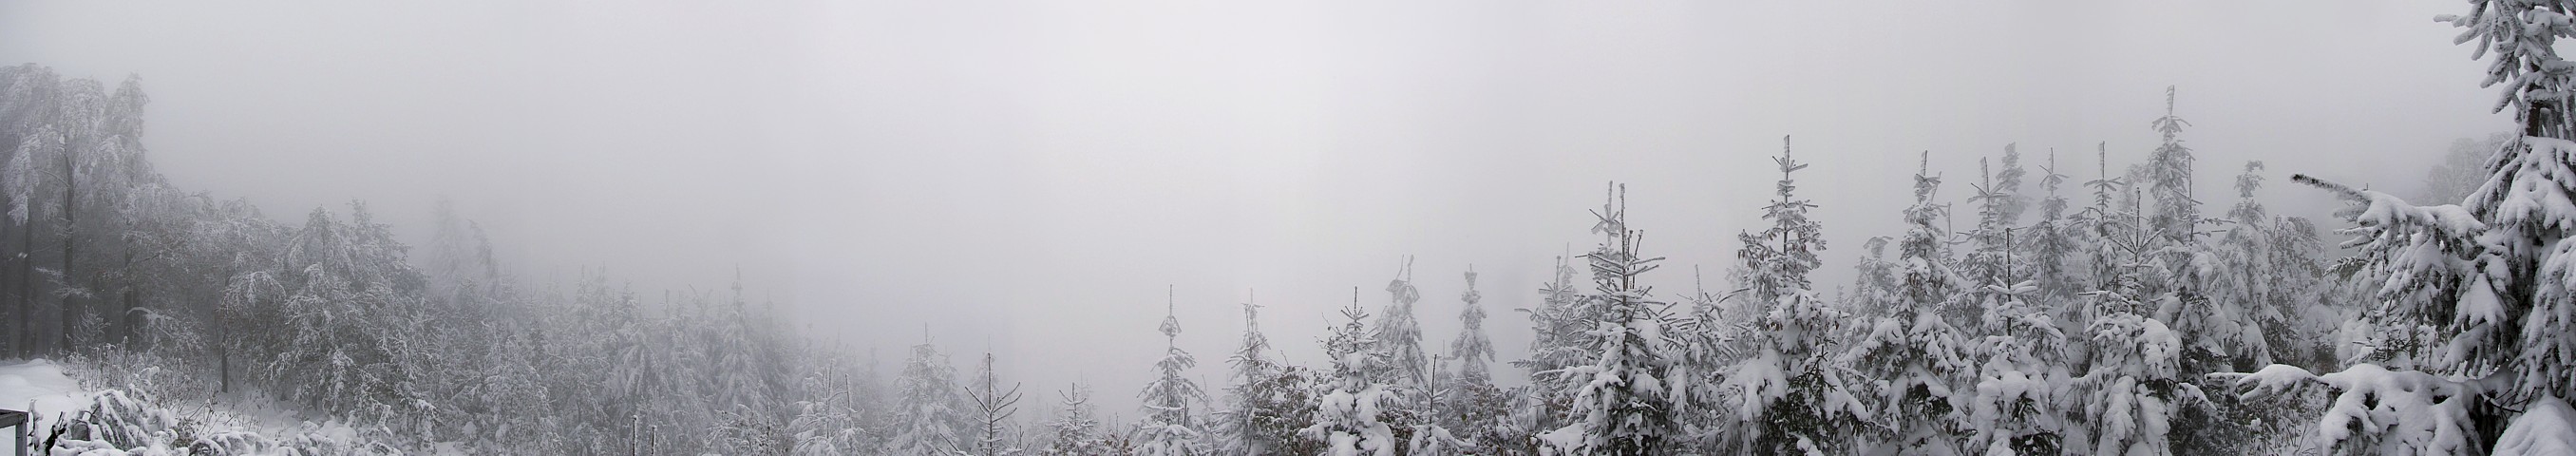 Hrobacza Łąka - Beskidy 2009
Panorama: widok ...wszystko jedno w którą stronę.
Wszędzie taka sama mgła :)
[i]Photo by G.W.[/i]
Słowa kluczowe: panorama,góry,zima